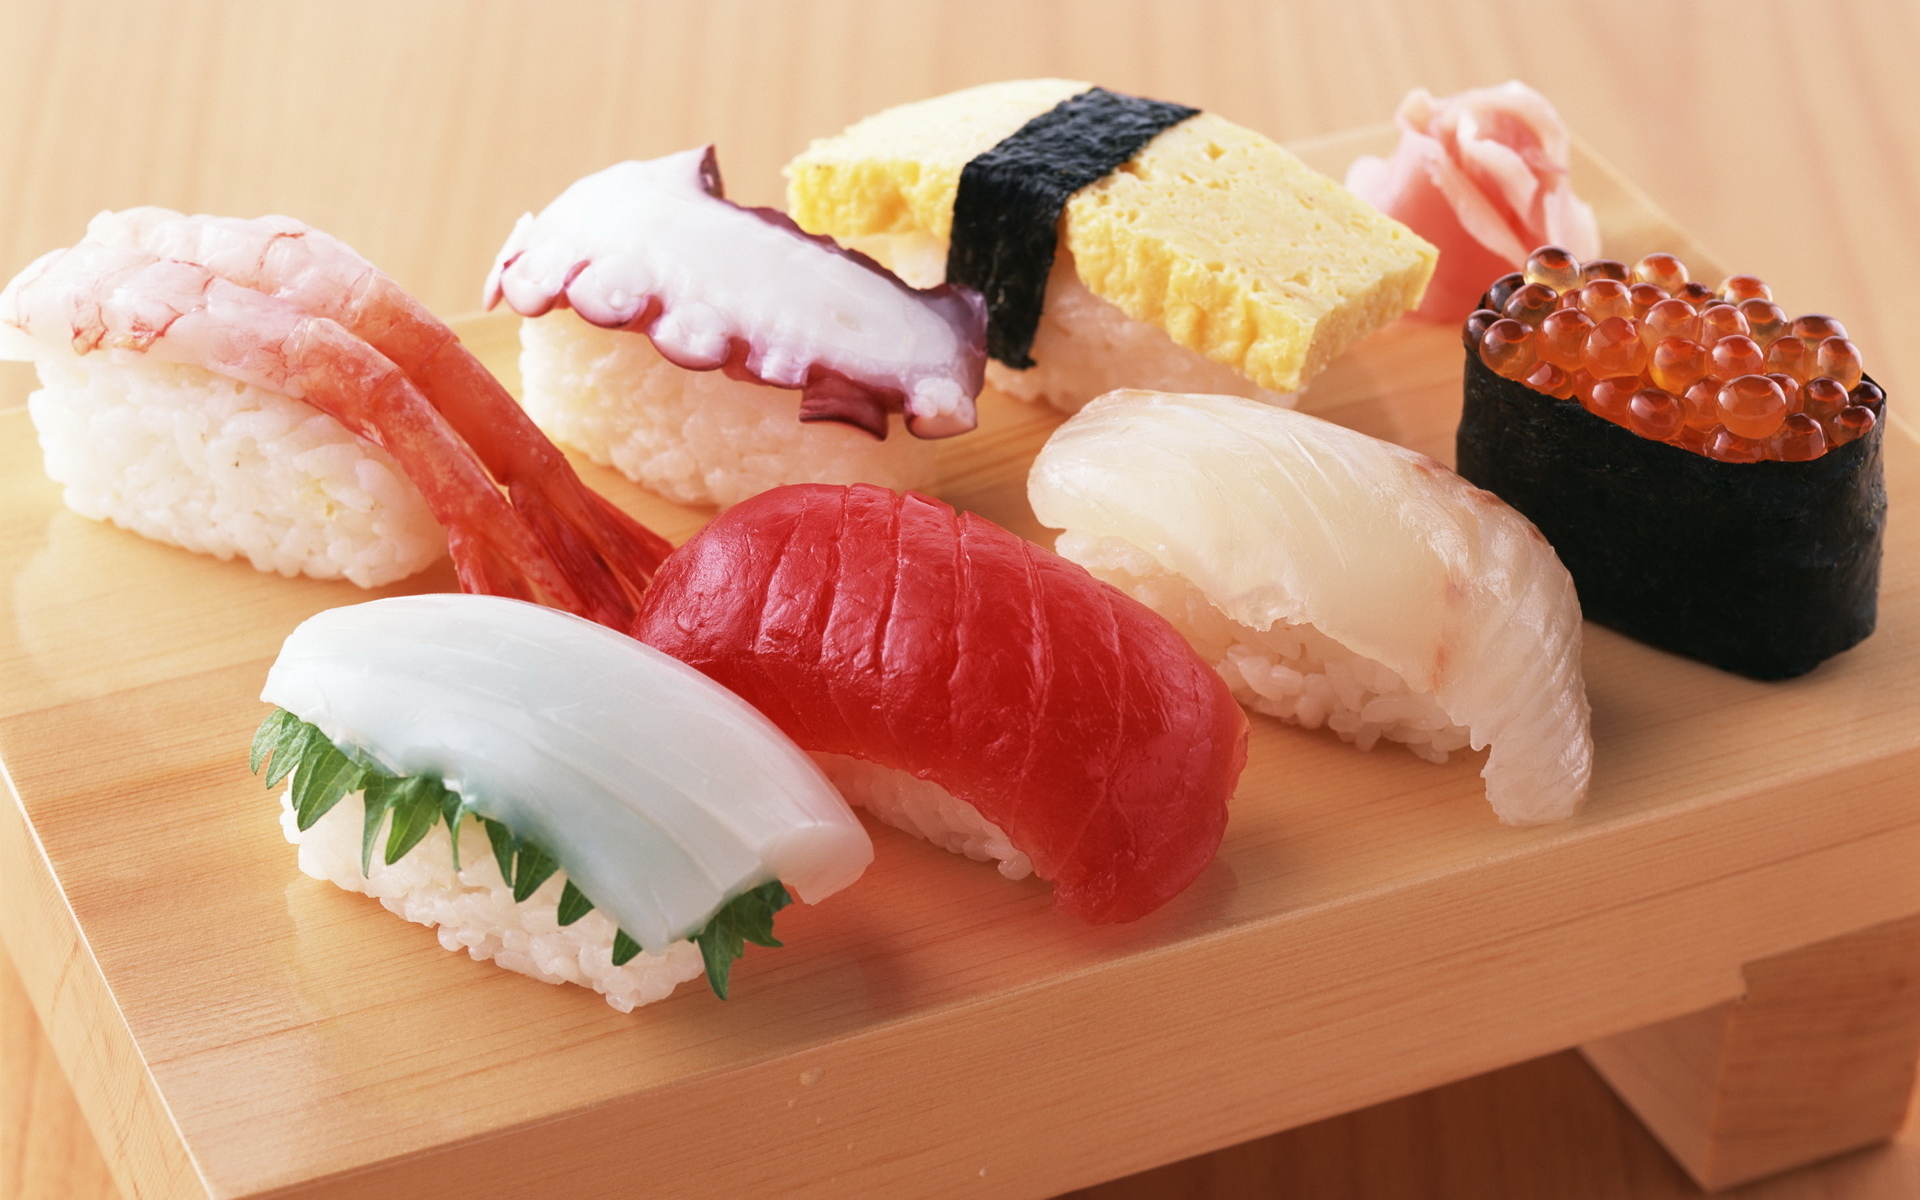 еда рыба суши роллы япония японская кухня food fish sushi rolls Japan Japanese kitchen загрузить